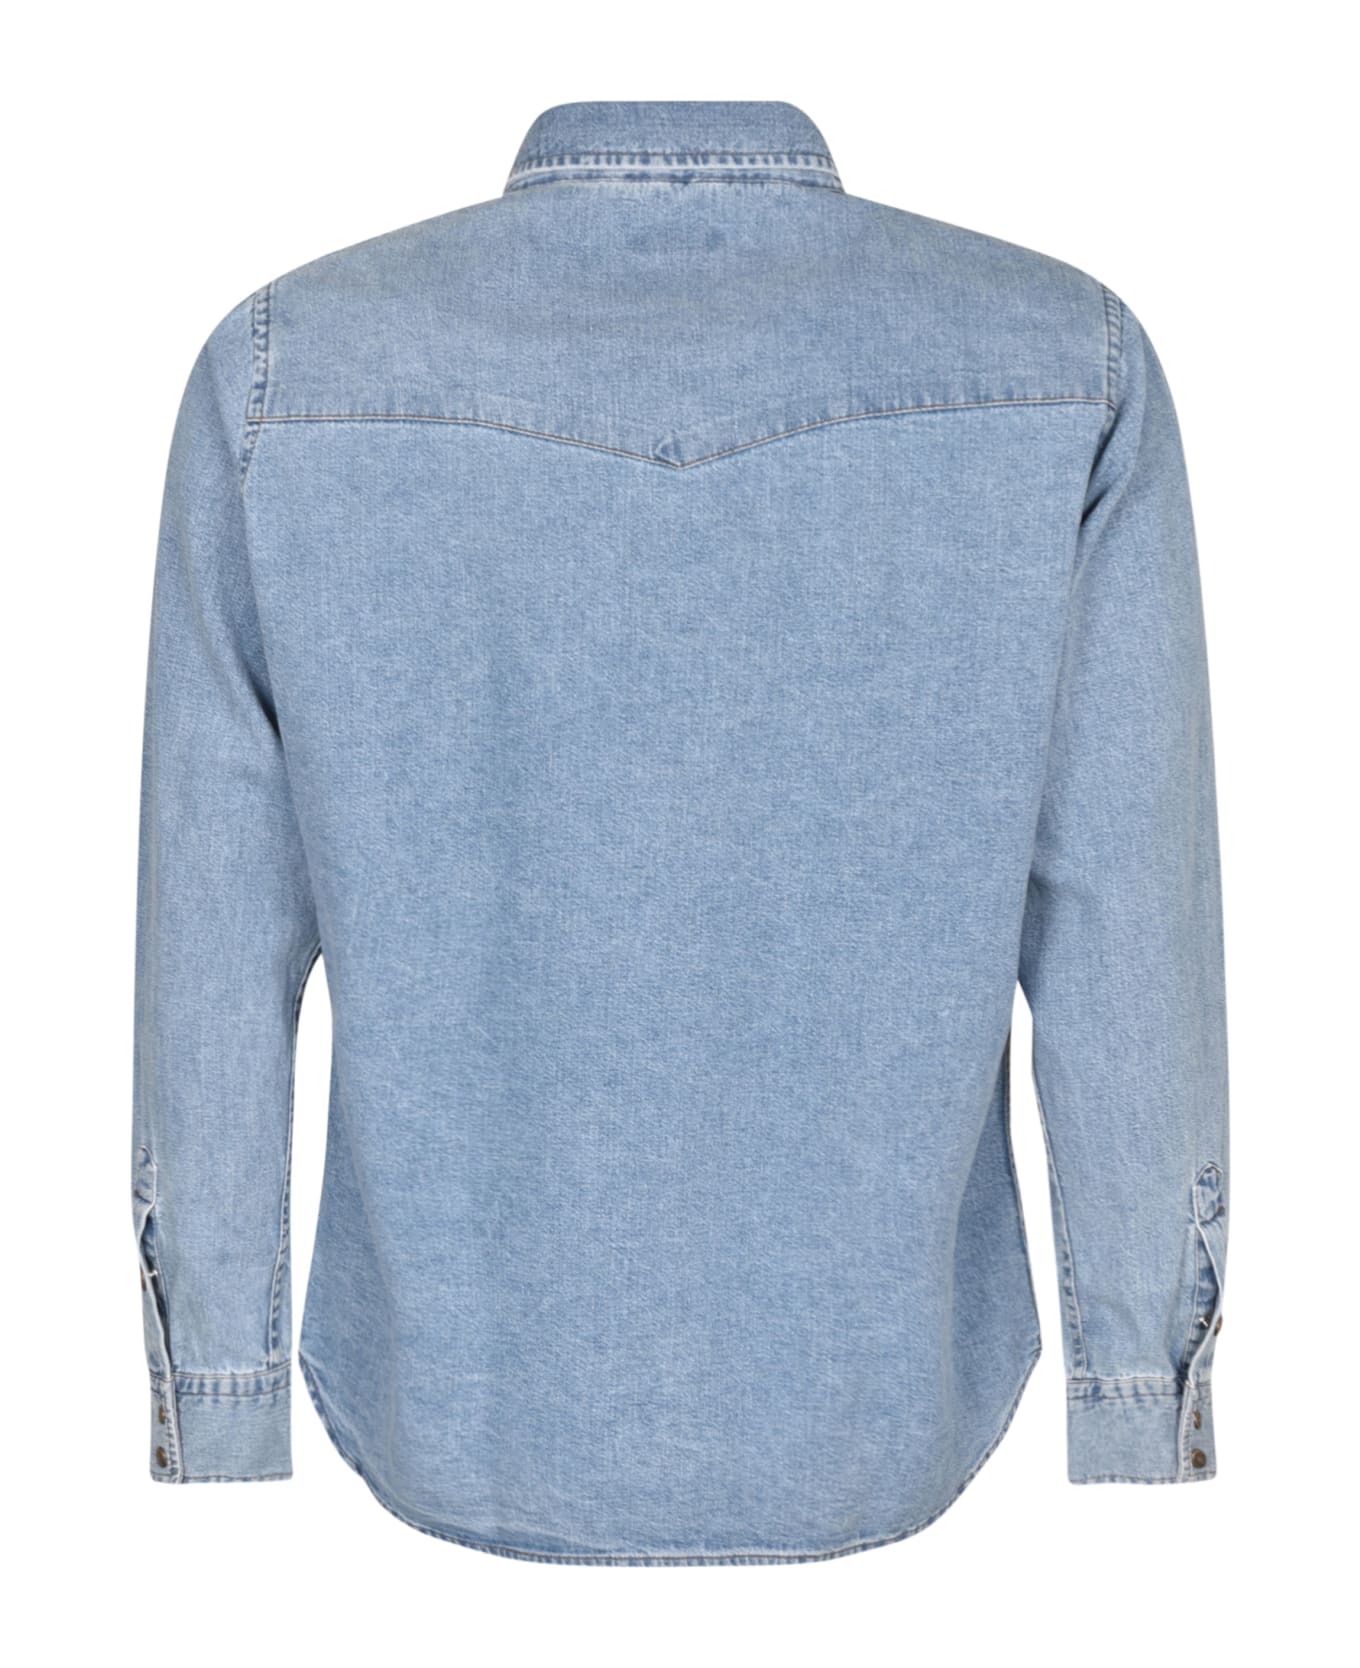 Tom Ford Denim Buttoned Shirt - Medium Blue